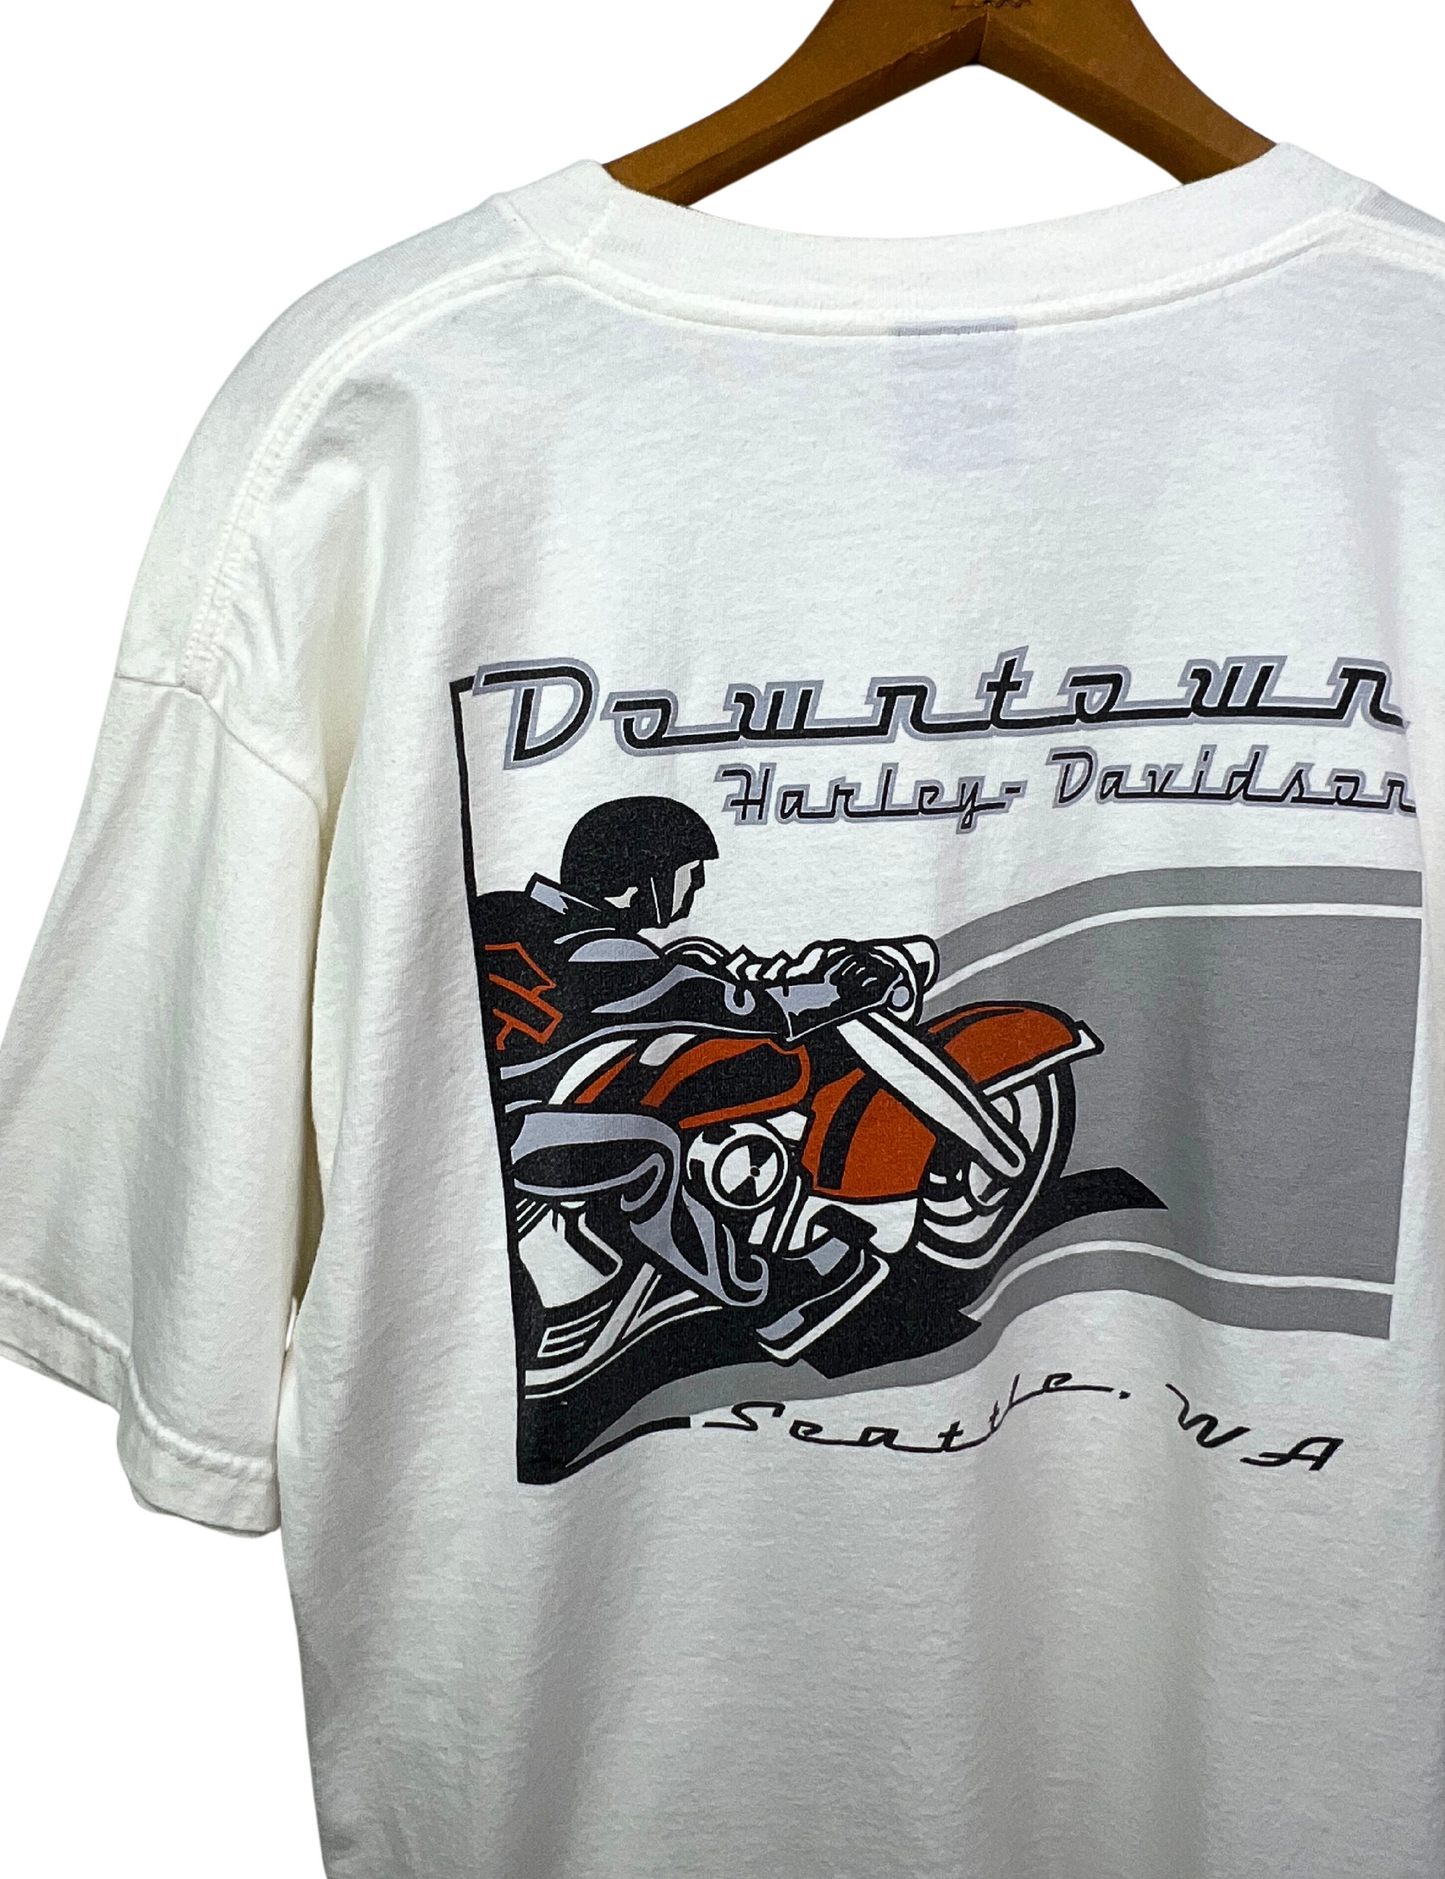 90’s Harley Davidson Seattle, Washington T-shirt Size Large